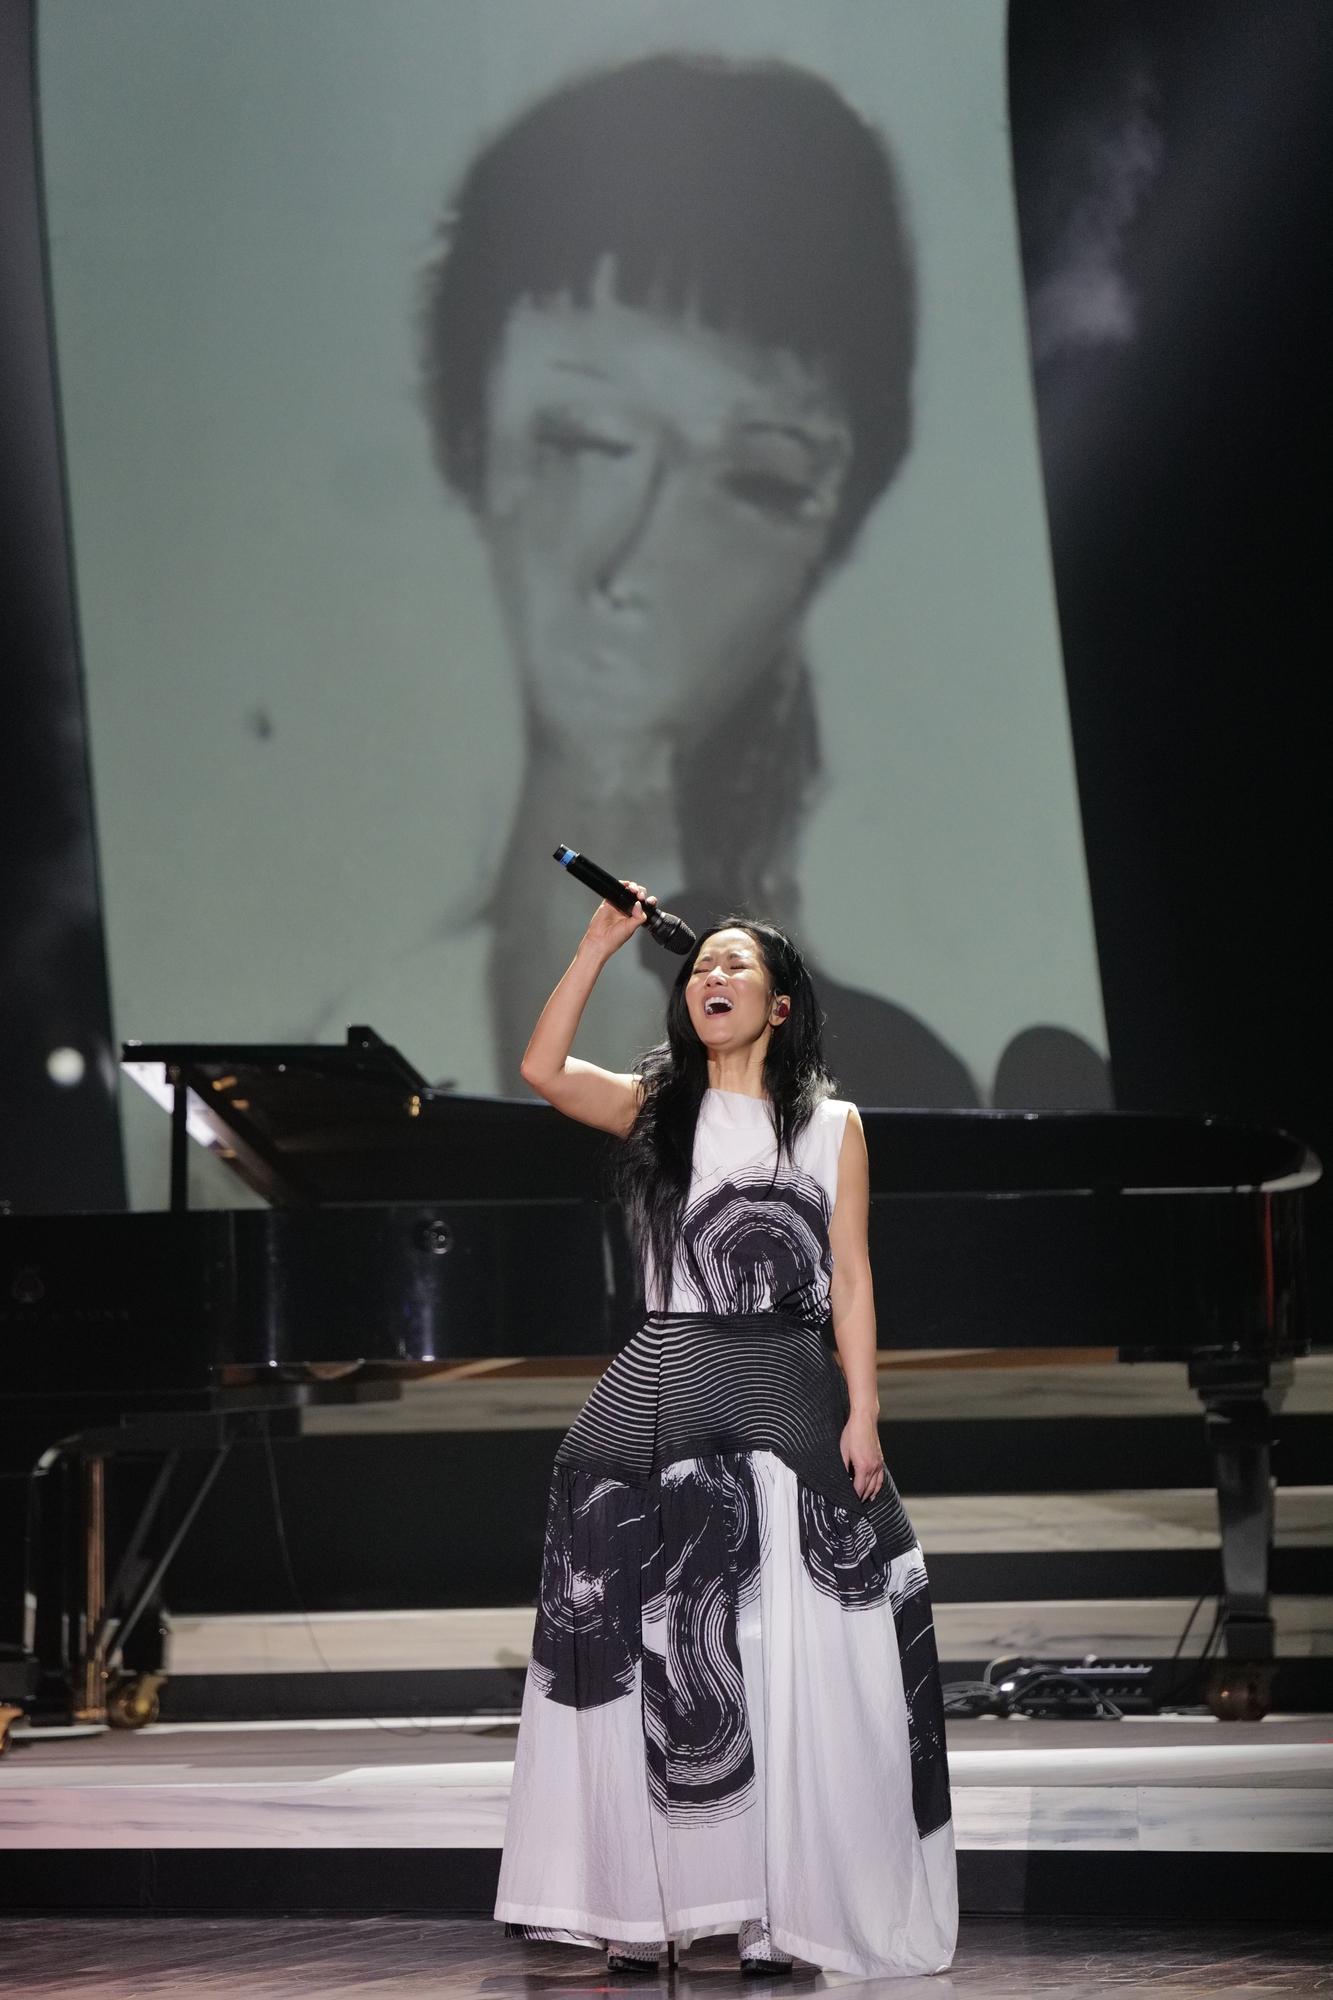 Diva Hồng Nhung rưng rưng khi nhắc về nhạc sĩ Trịnh Công Sơn trong concert cá nhân - Ảnh 1.